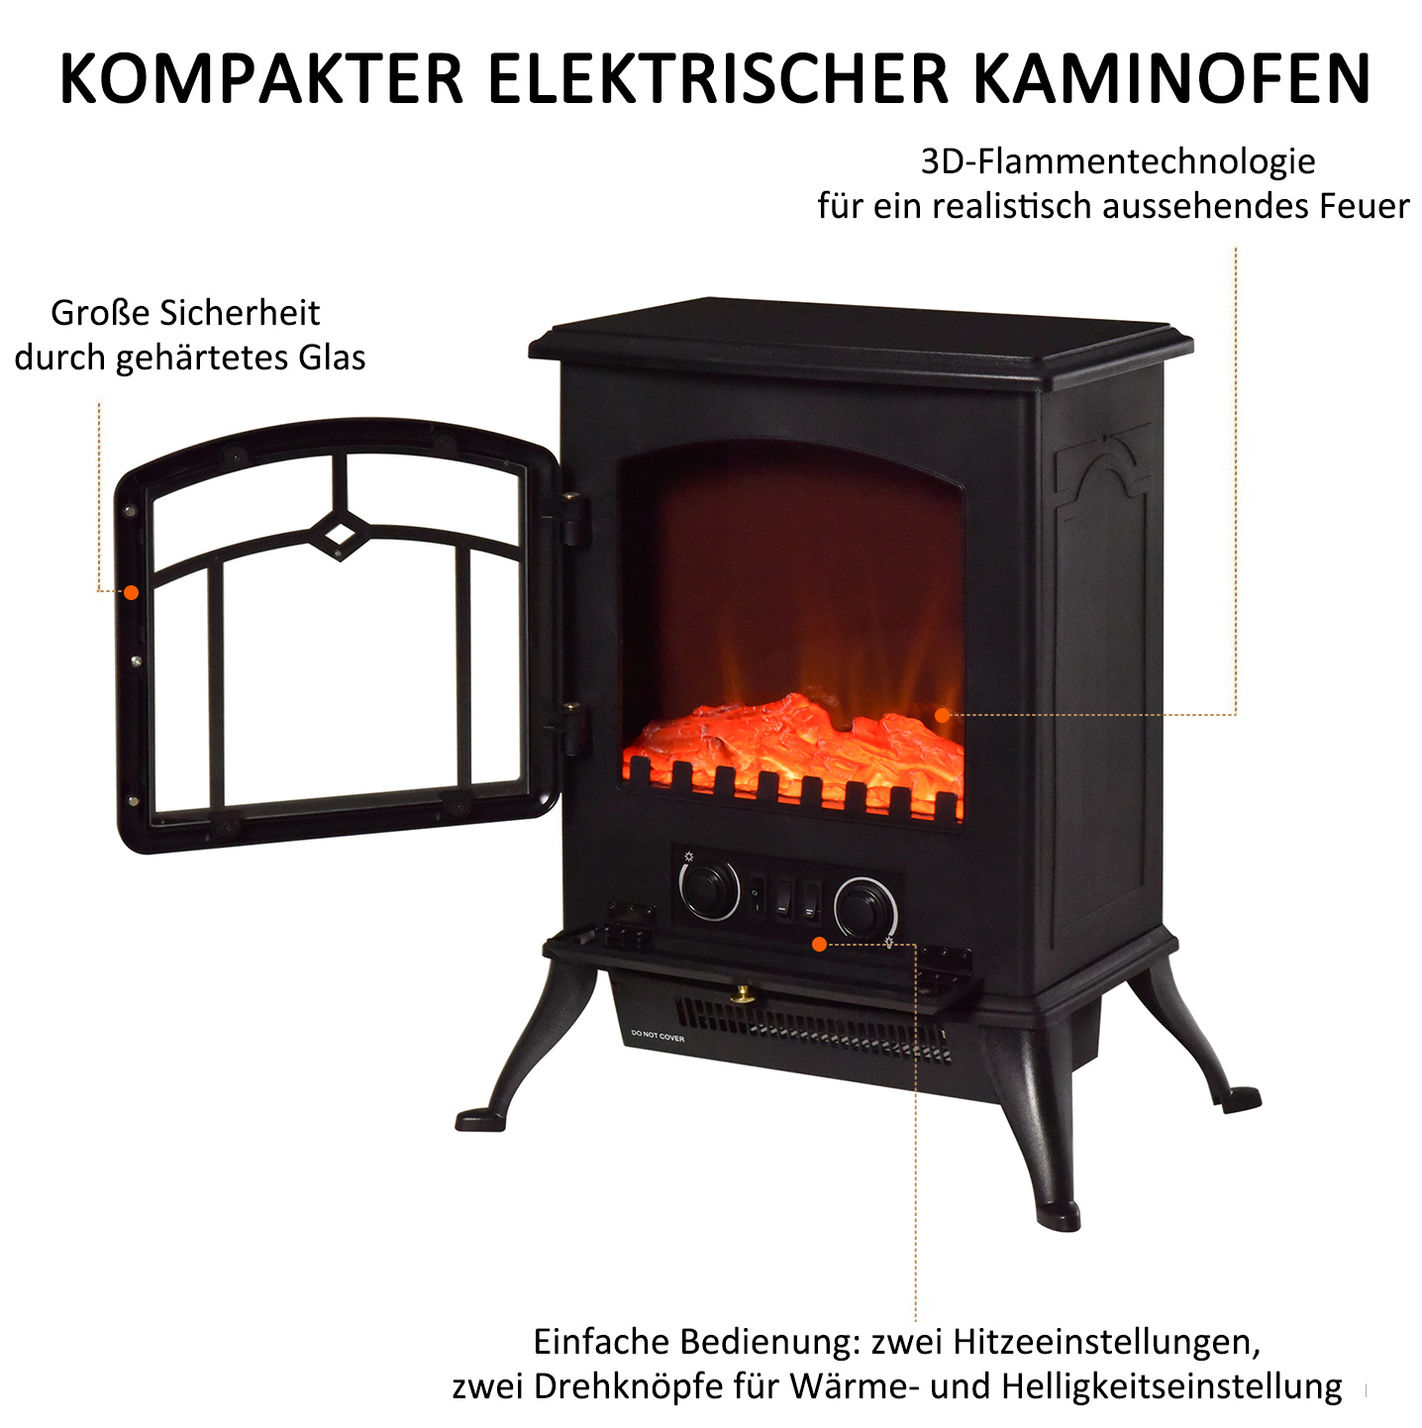 Elektrokamin mit Flammeneffekt und Heizfunktion Farbe: schwarz | Weltbild.de